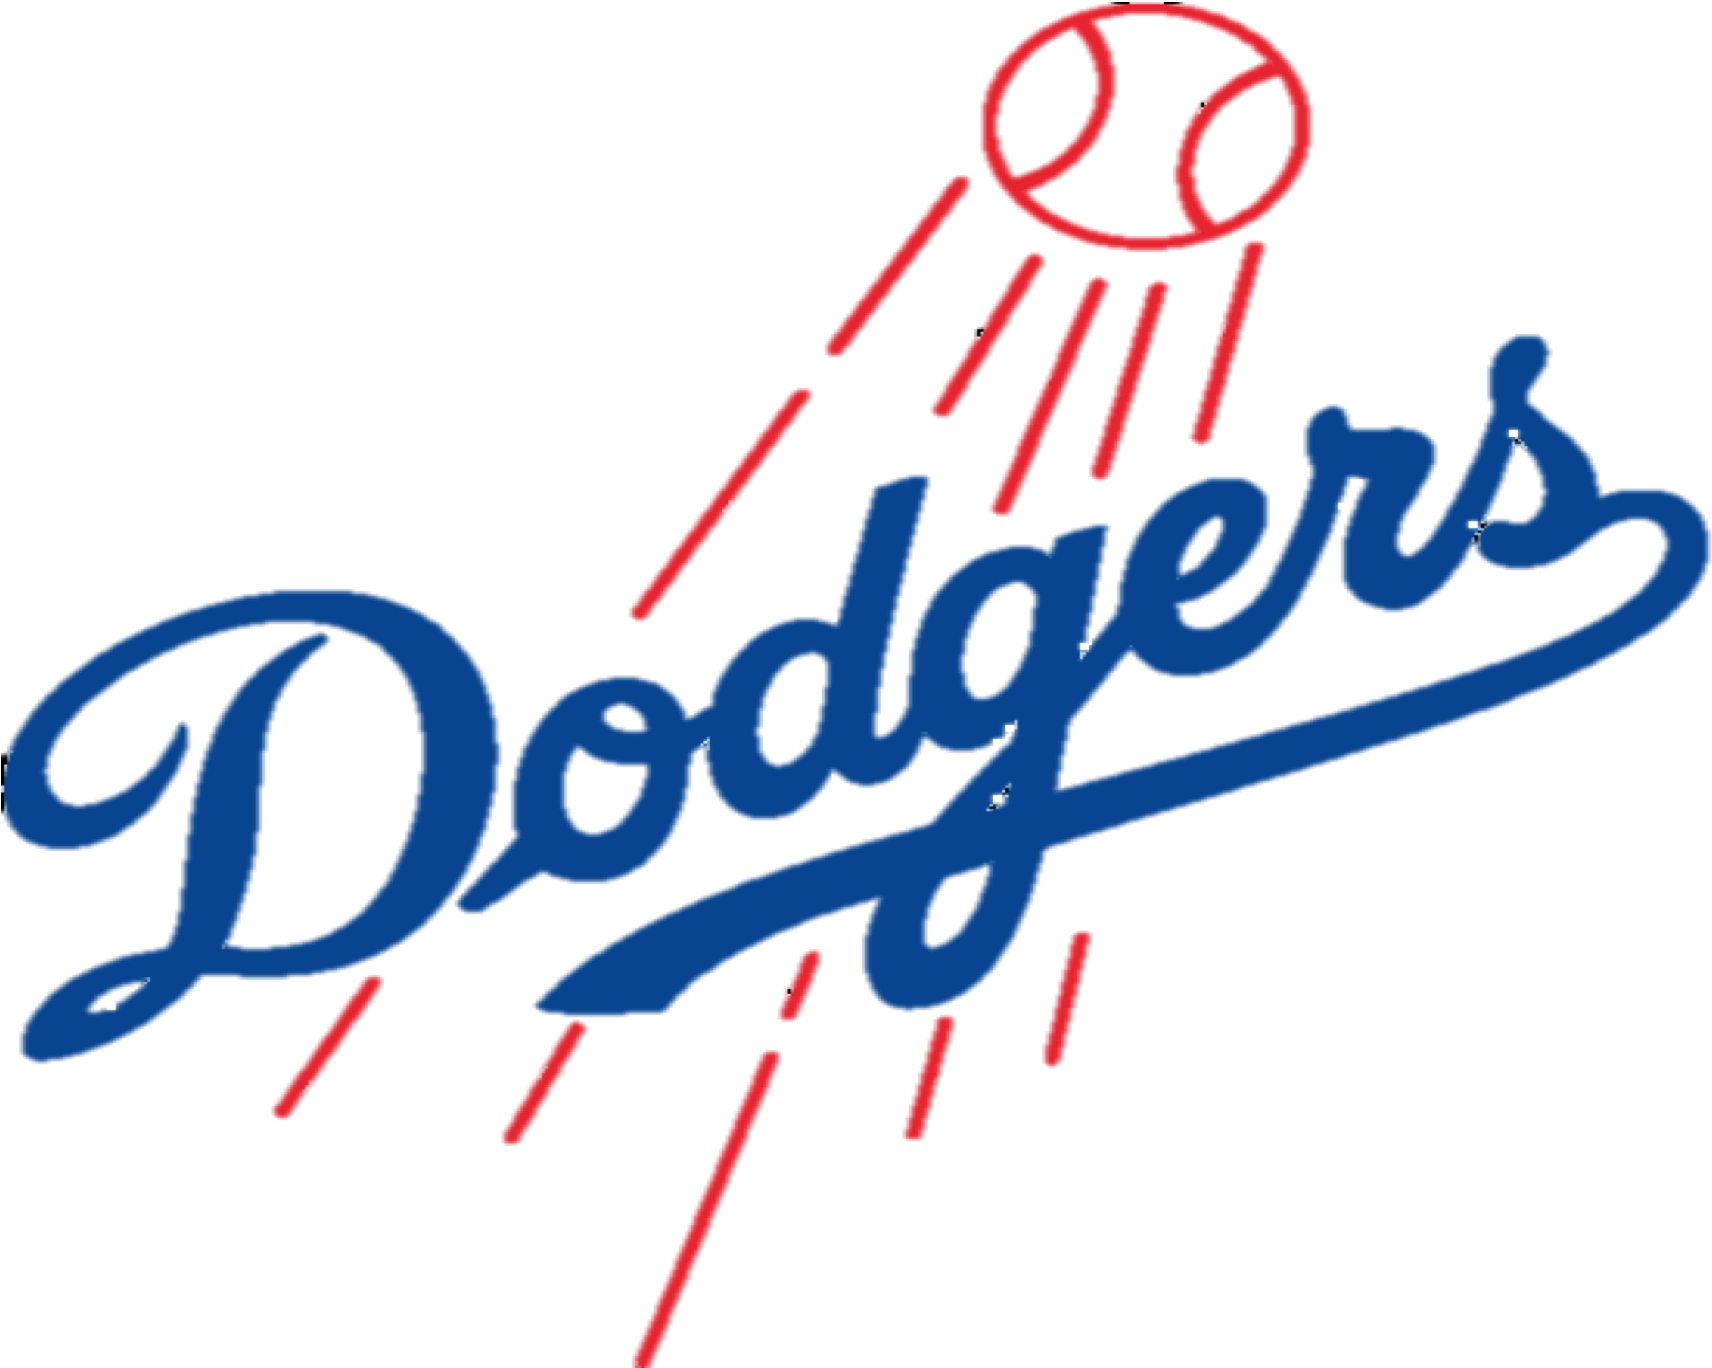 A Logo Of A Baseball